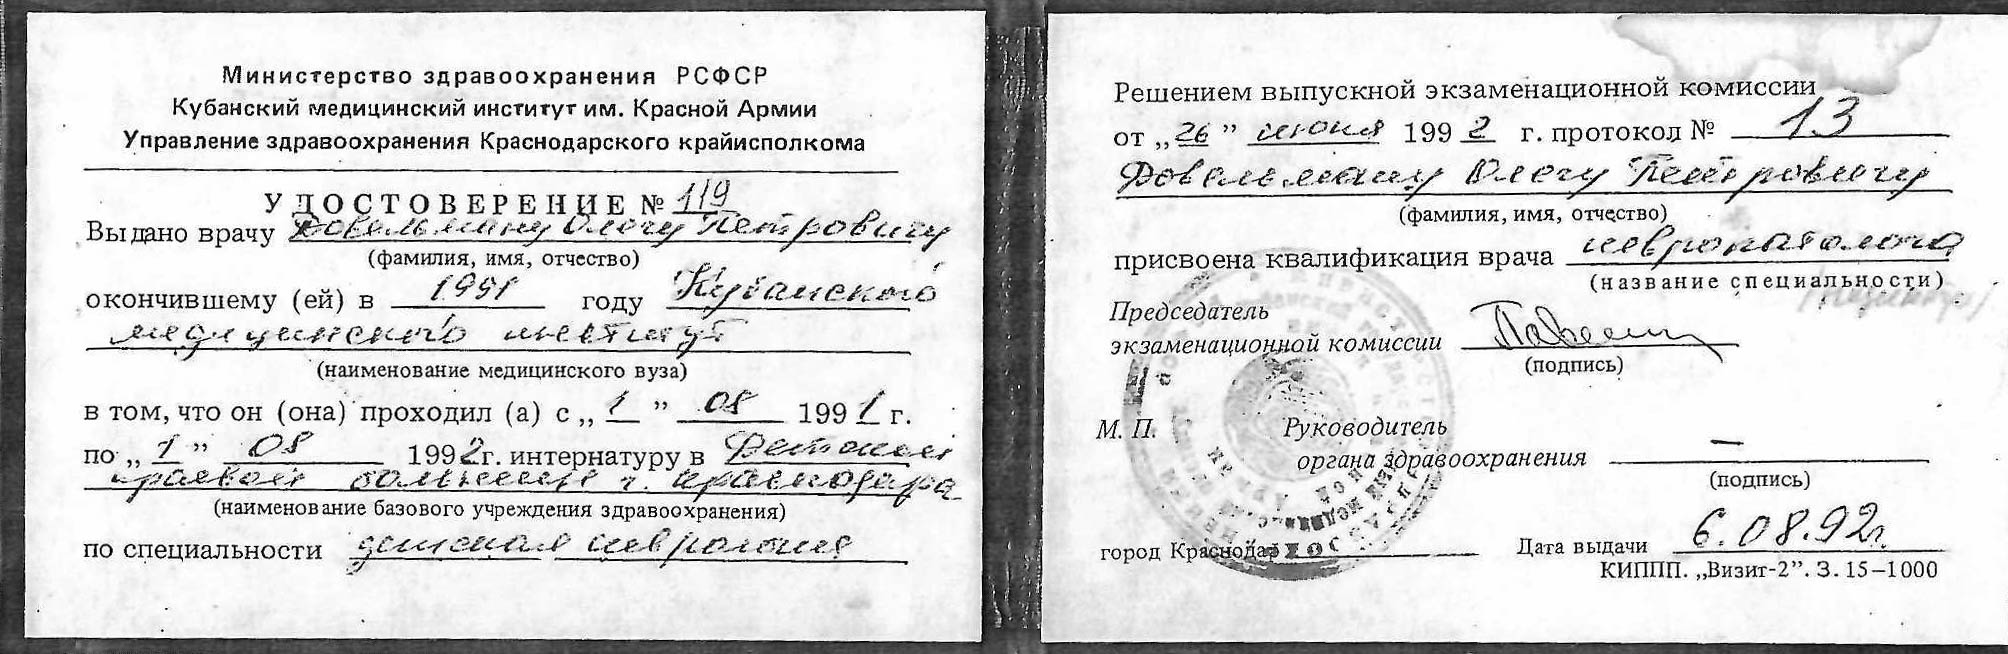 Сертификат врача Довельман Олег Петрович фото 6